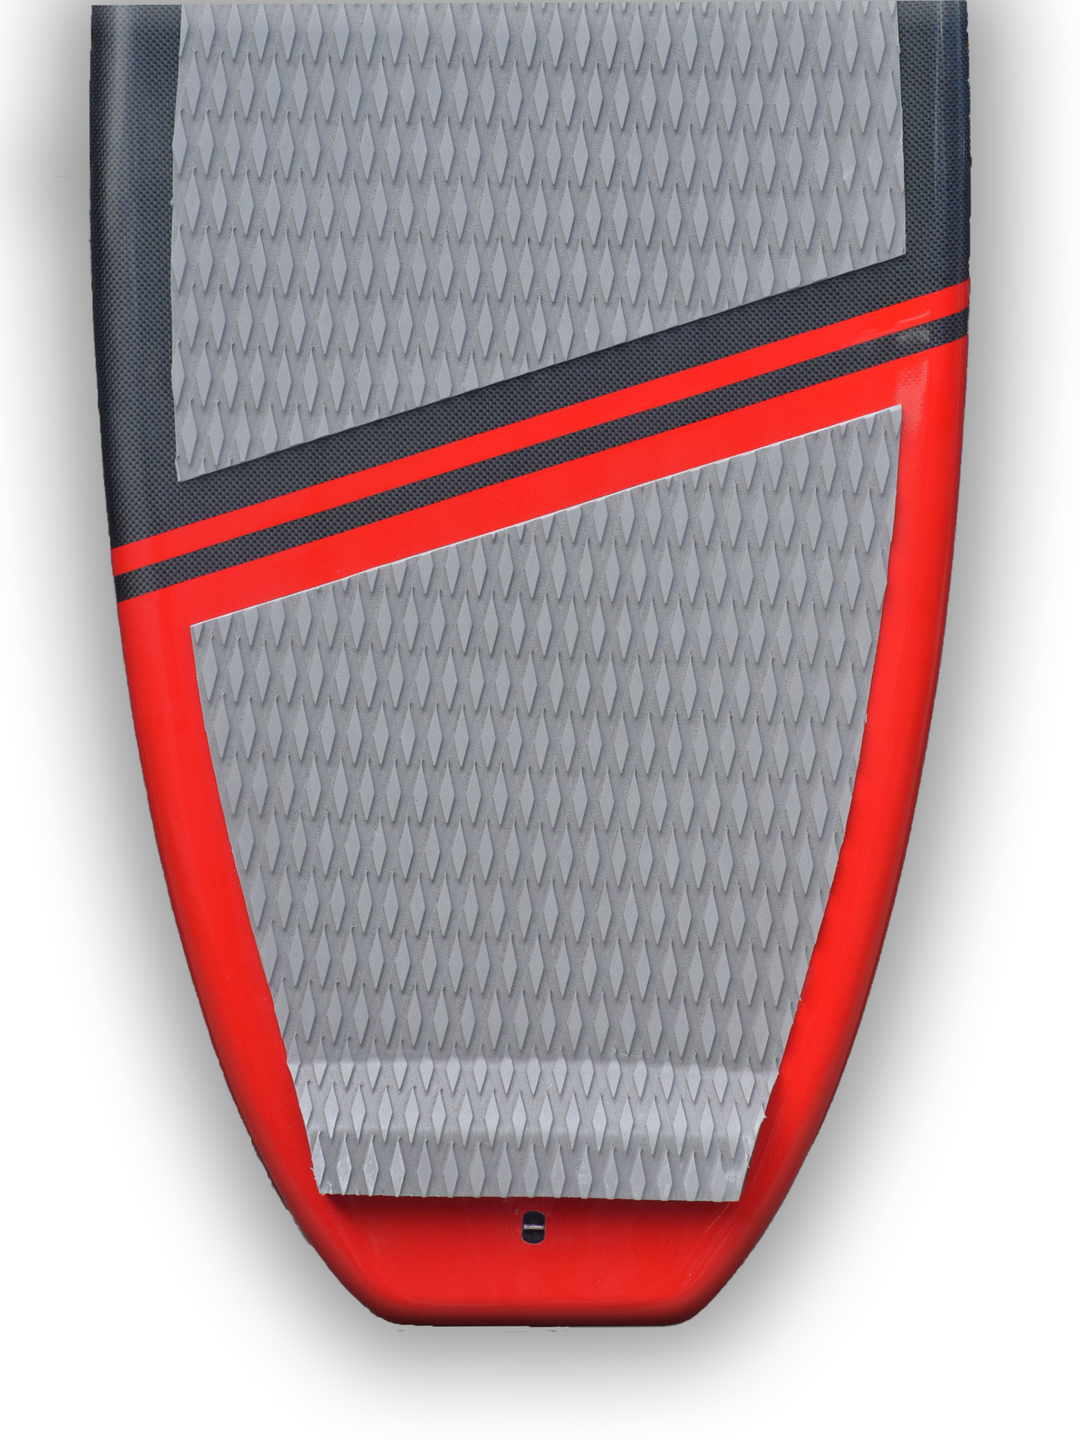 Hydrofoil board